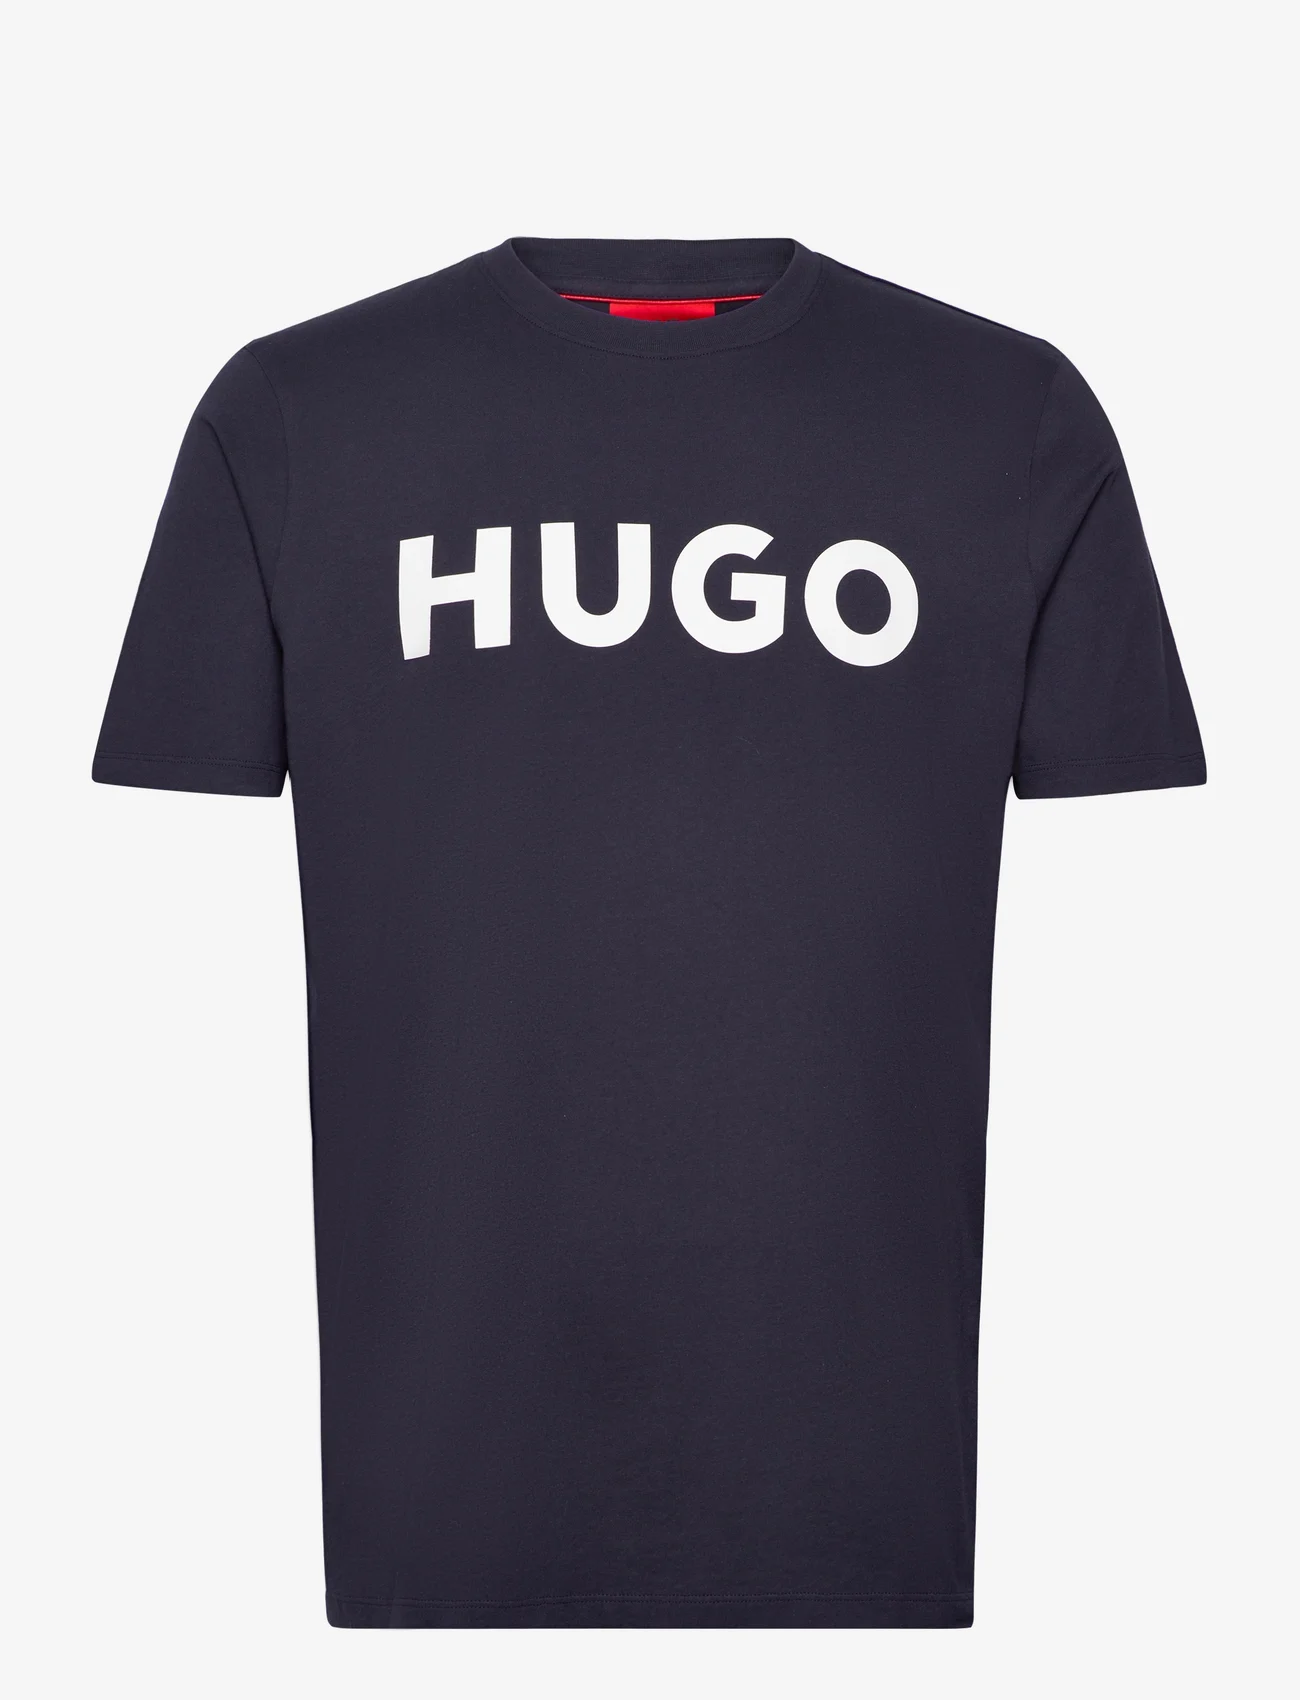 HUGO - Dulivio - die niedrigsten preise - dark blue - 0